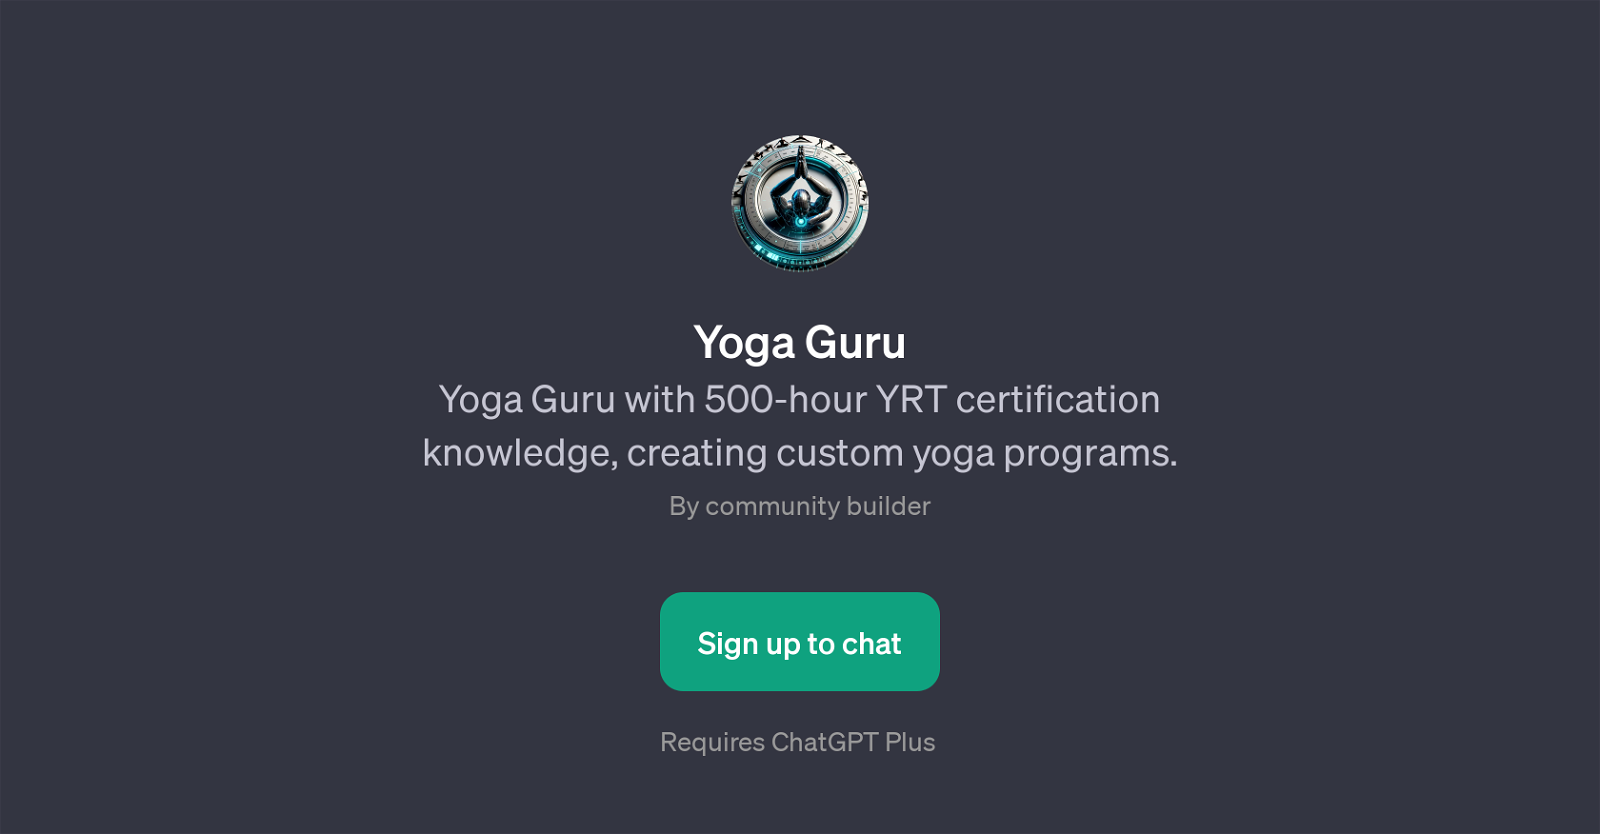 Yoga Guru website